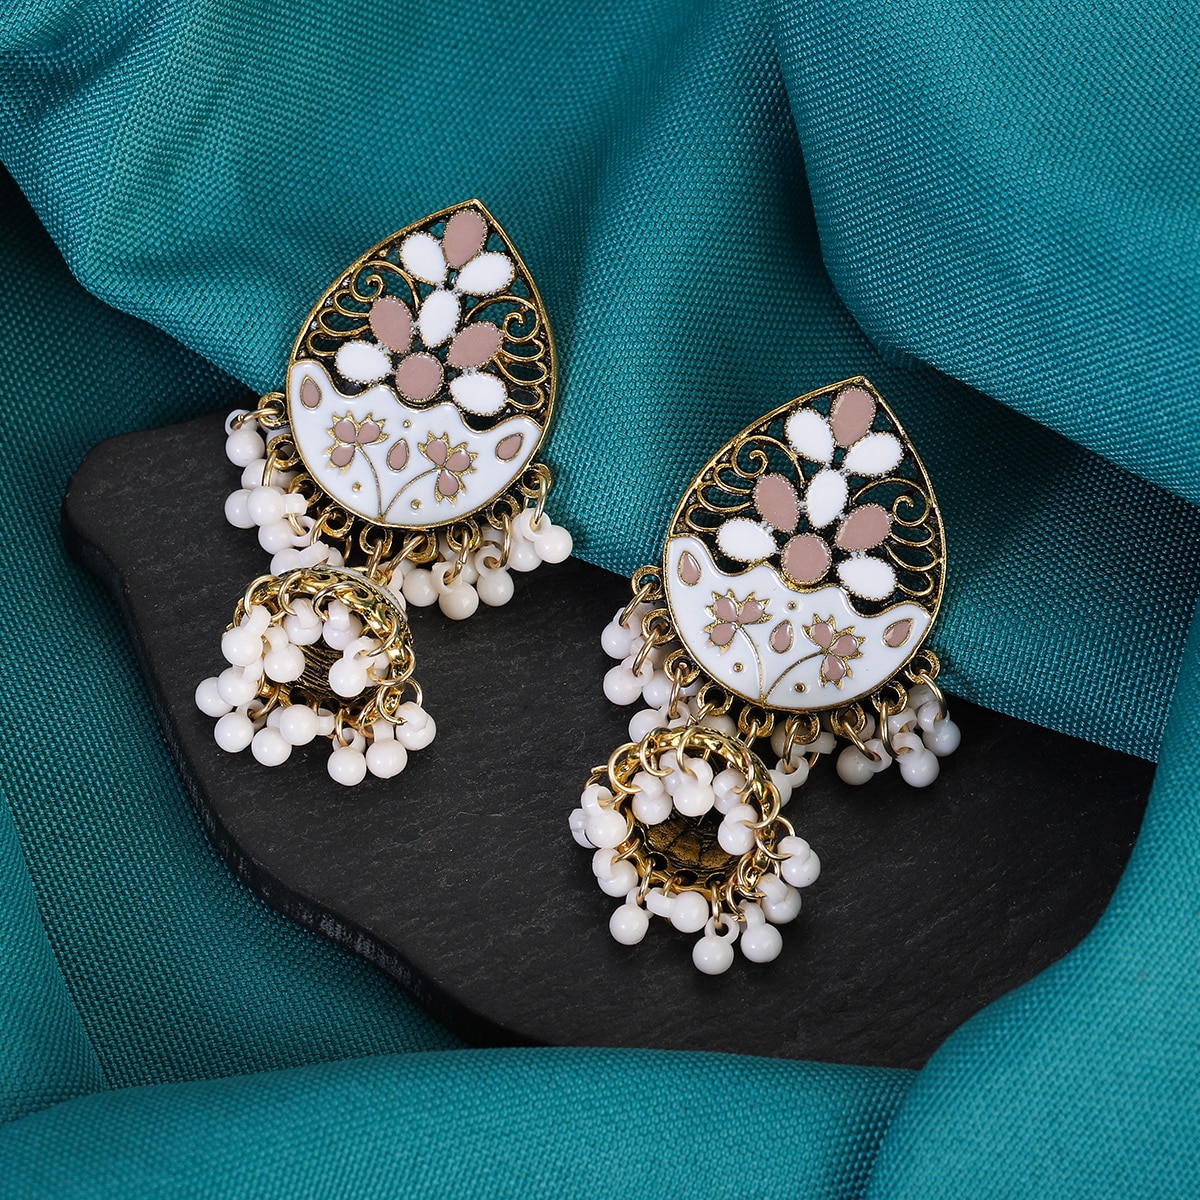 Vintage-Fashion-Water-Drop-Dangle-Earrings-for-Women-Ethnic-Indian-Jewelry-Blue-Flower-Tassel-Dangli-3256804947025776-5